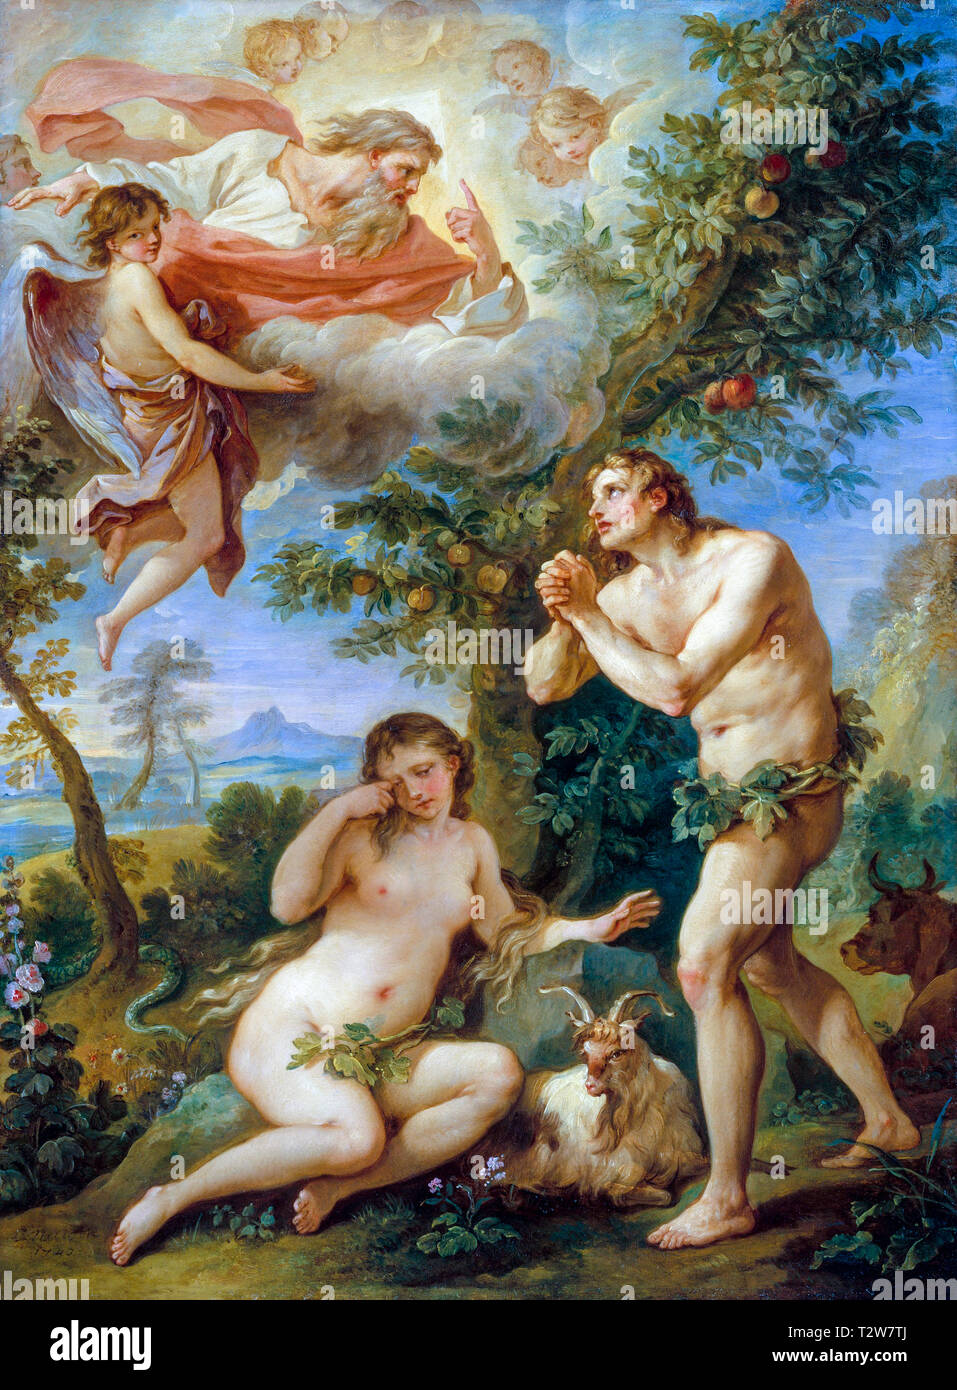 La réprimande d'Adam et Eve, peinture de Charles Joseph Natoire, 1740 Banque D'Images